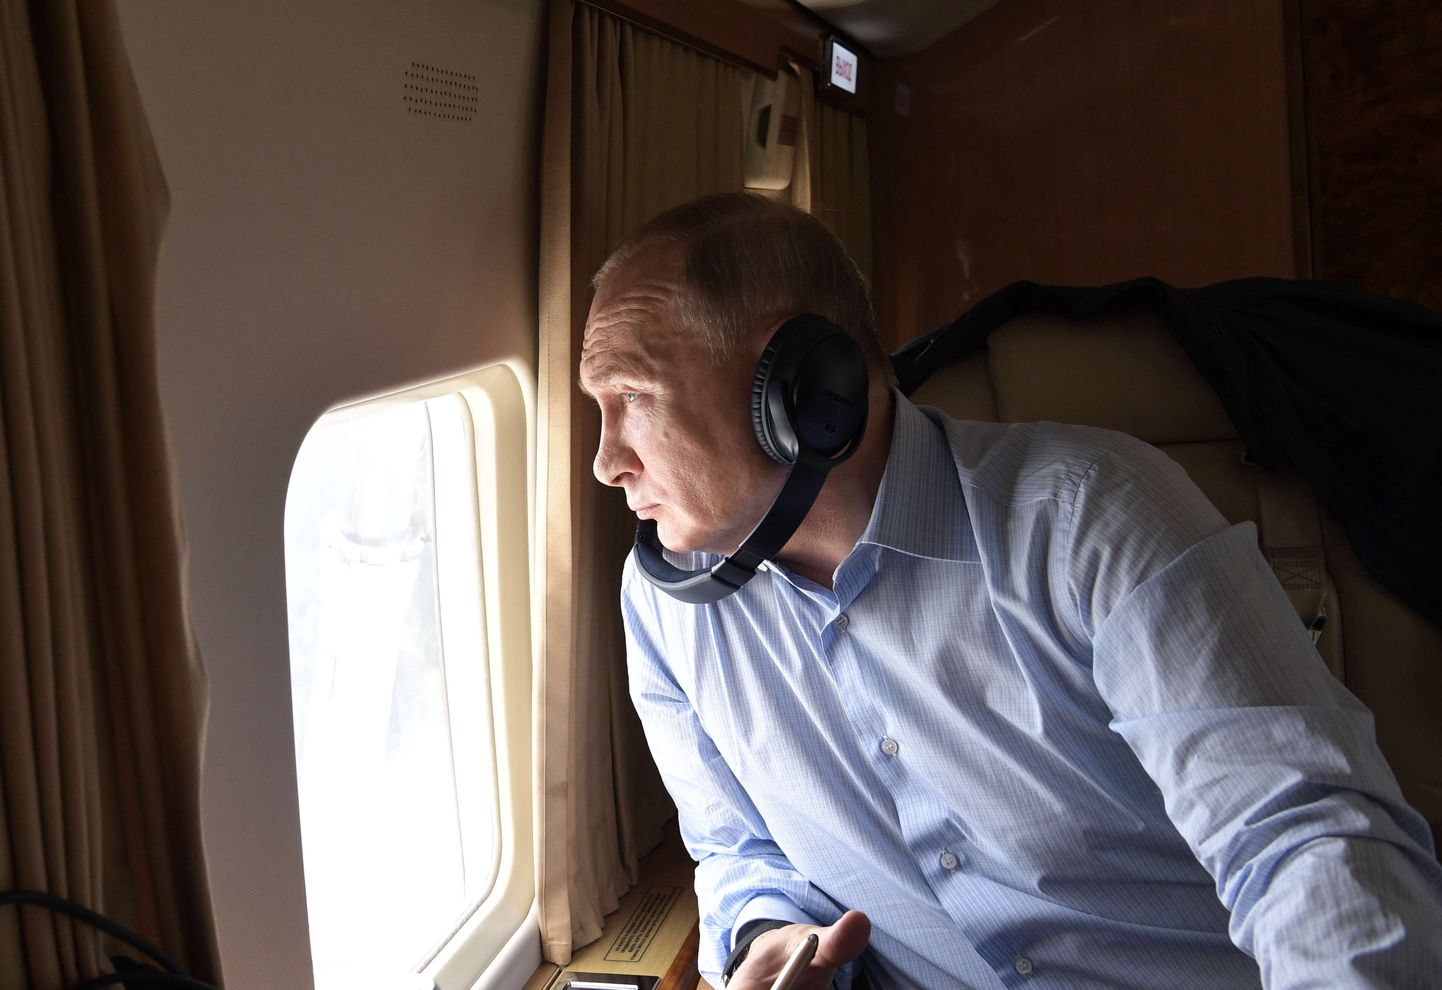 Vladimir Putin juulis 2019 presidendilennukis